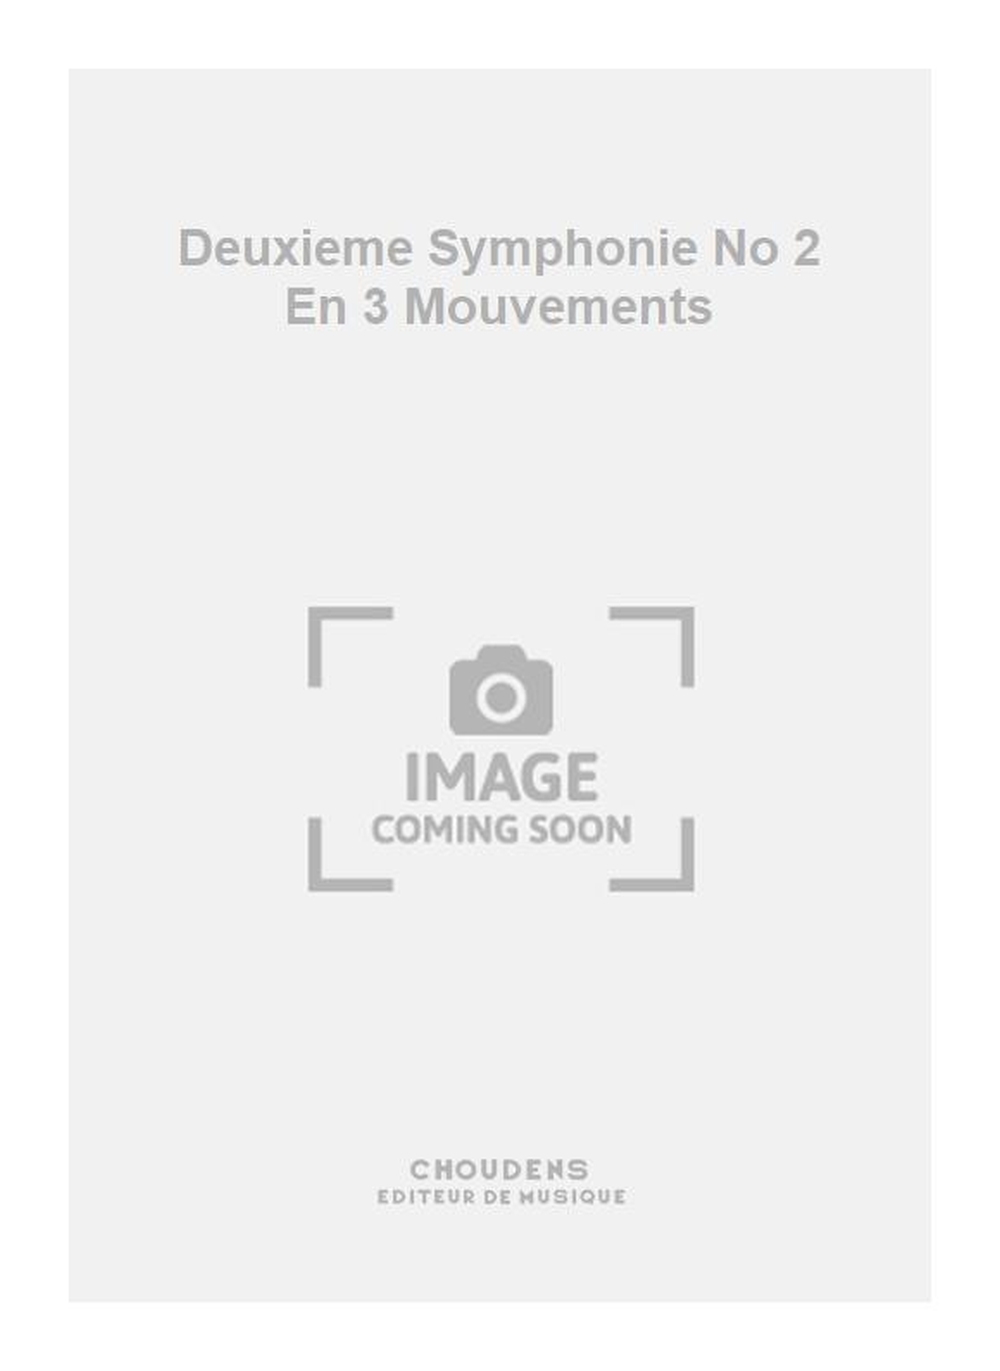 Marcel Landowski: Deuxieme Symphonie No 2 En 3 Mouvements